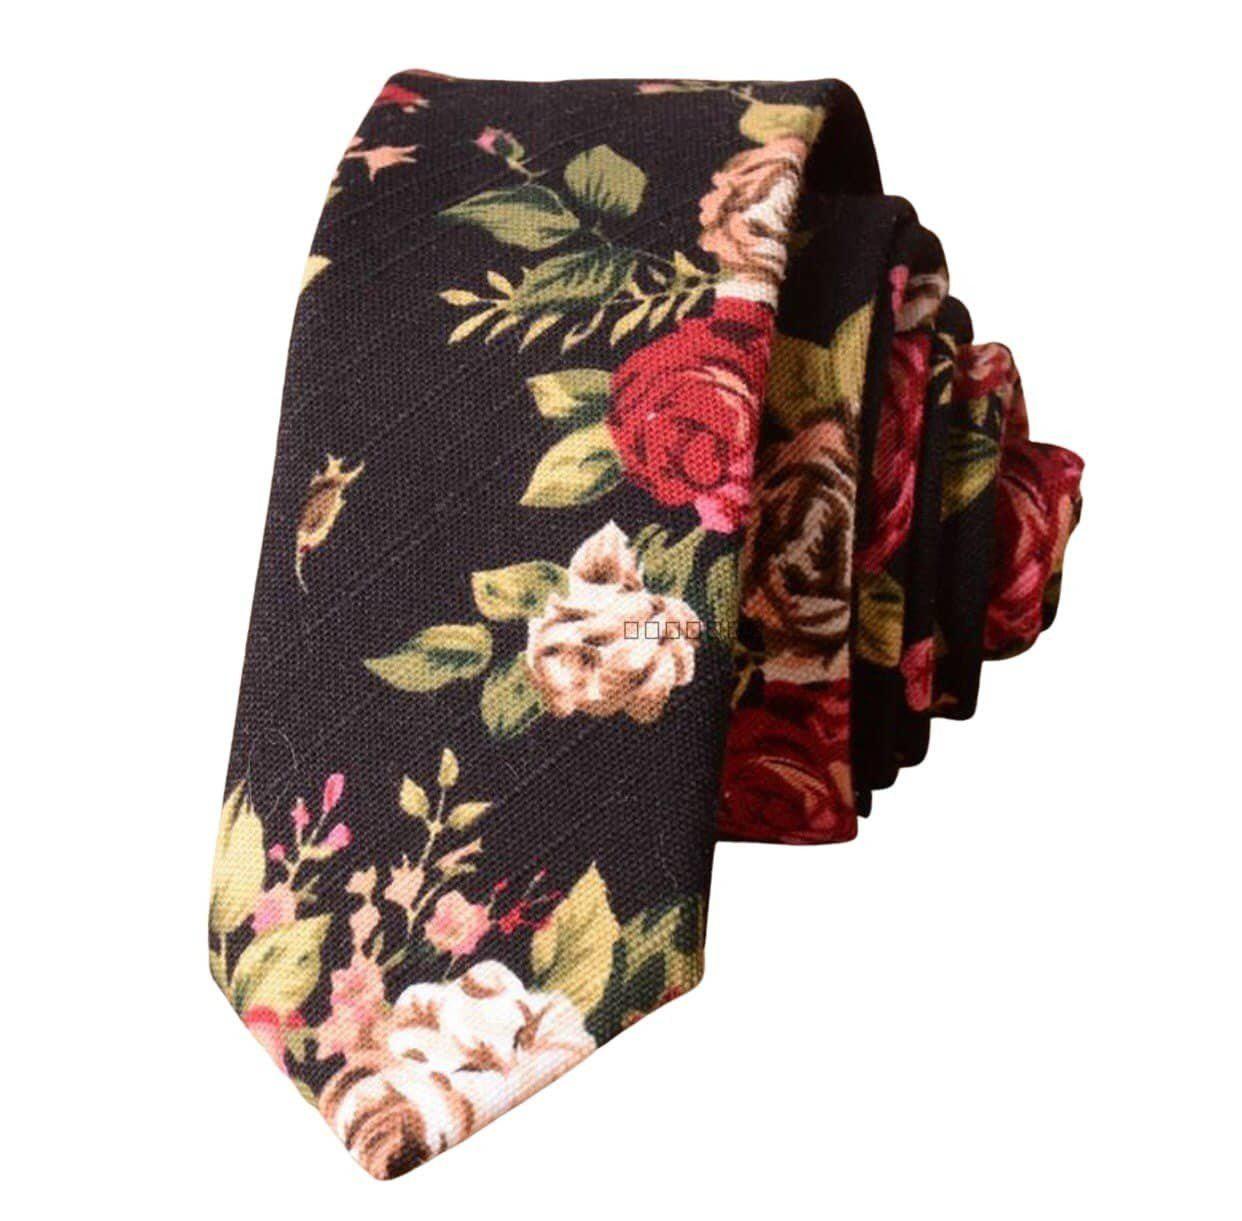 Floral Ties for Men; Skinny Ties; neckties